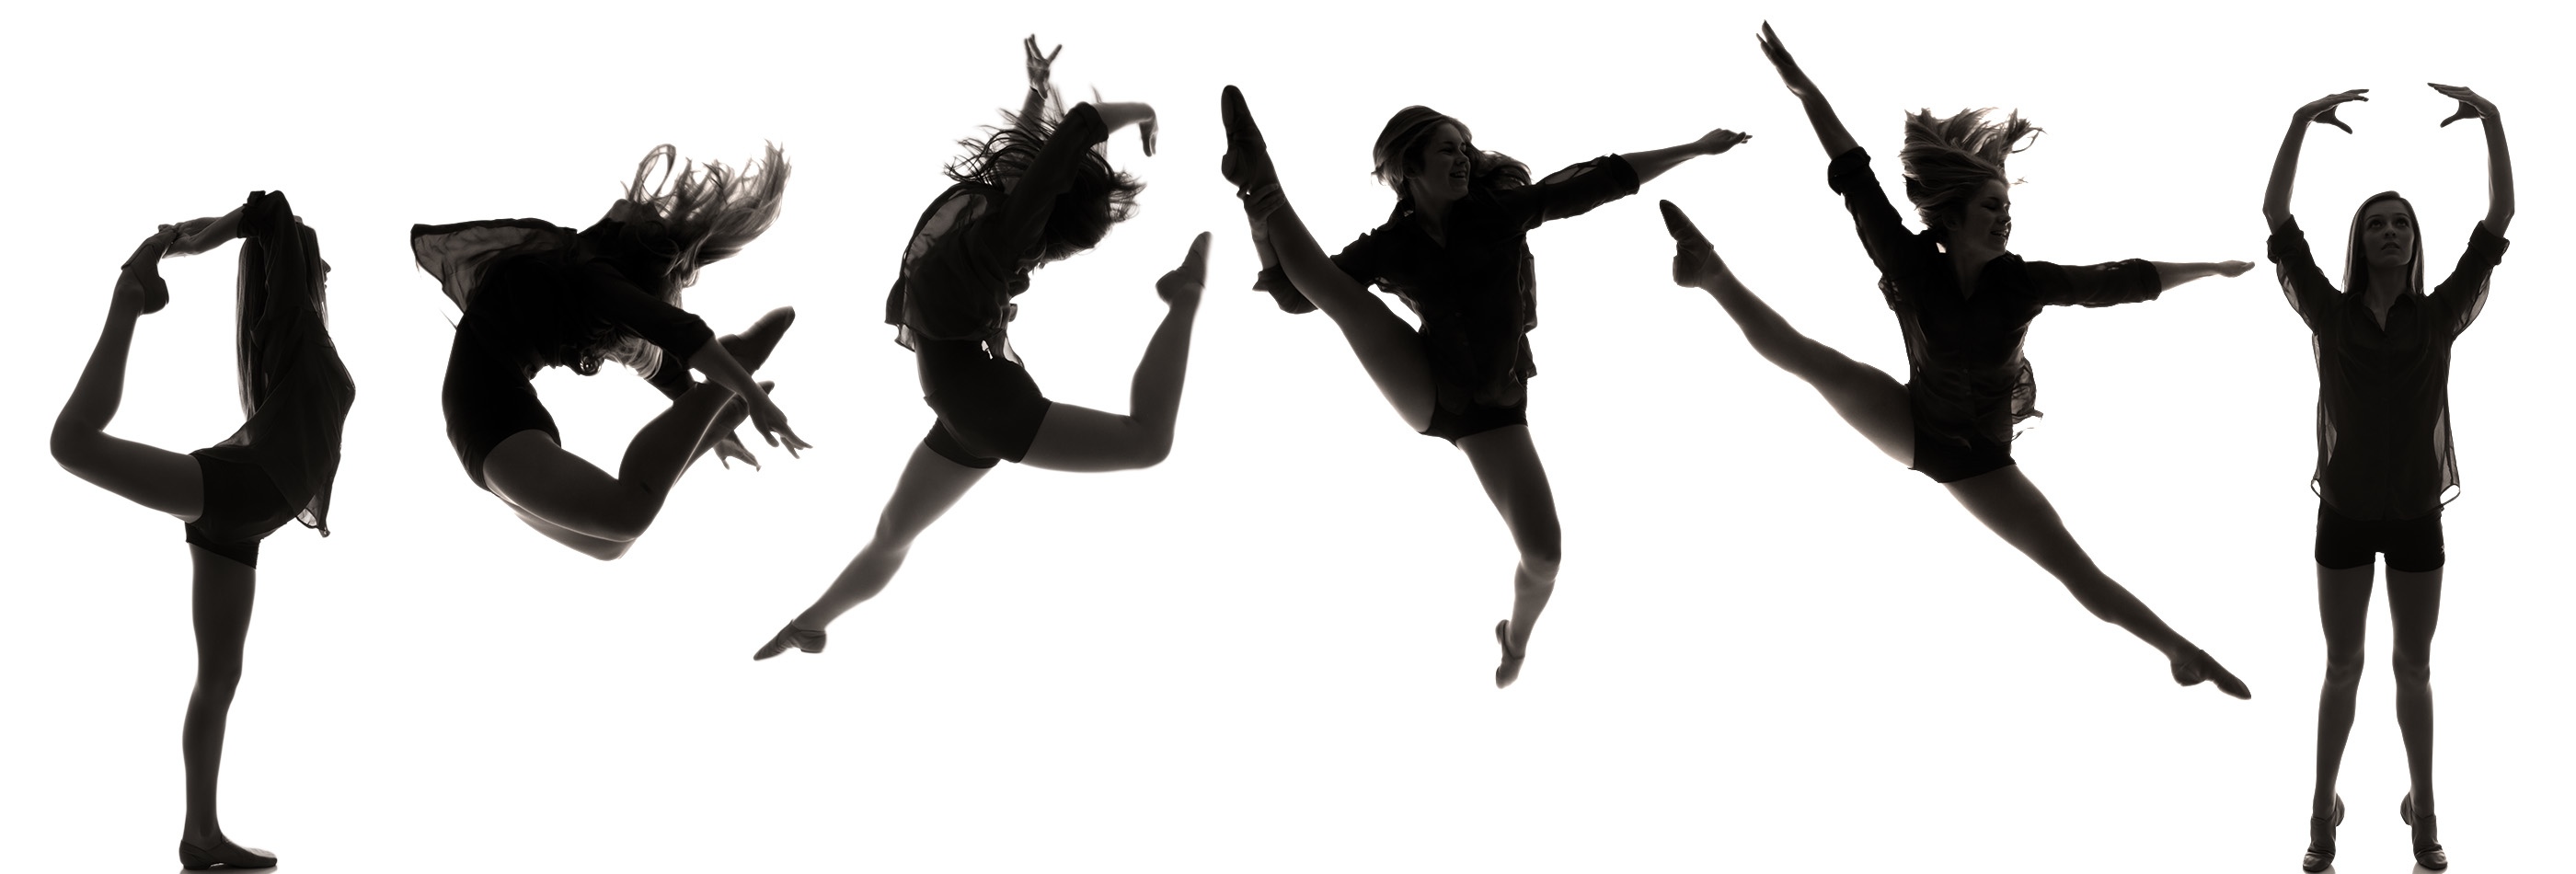 Dance Team Silhouette Hd Photo Clipart